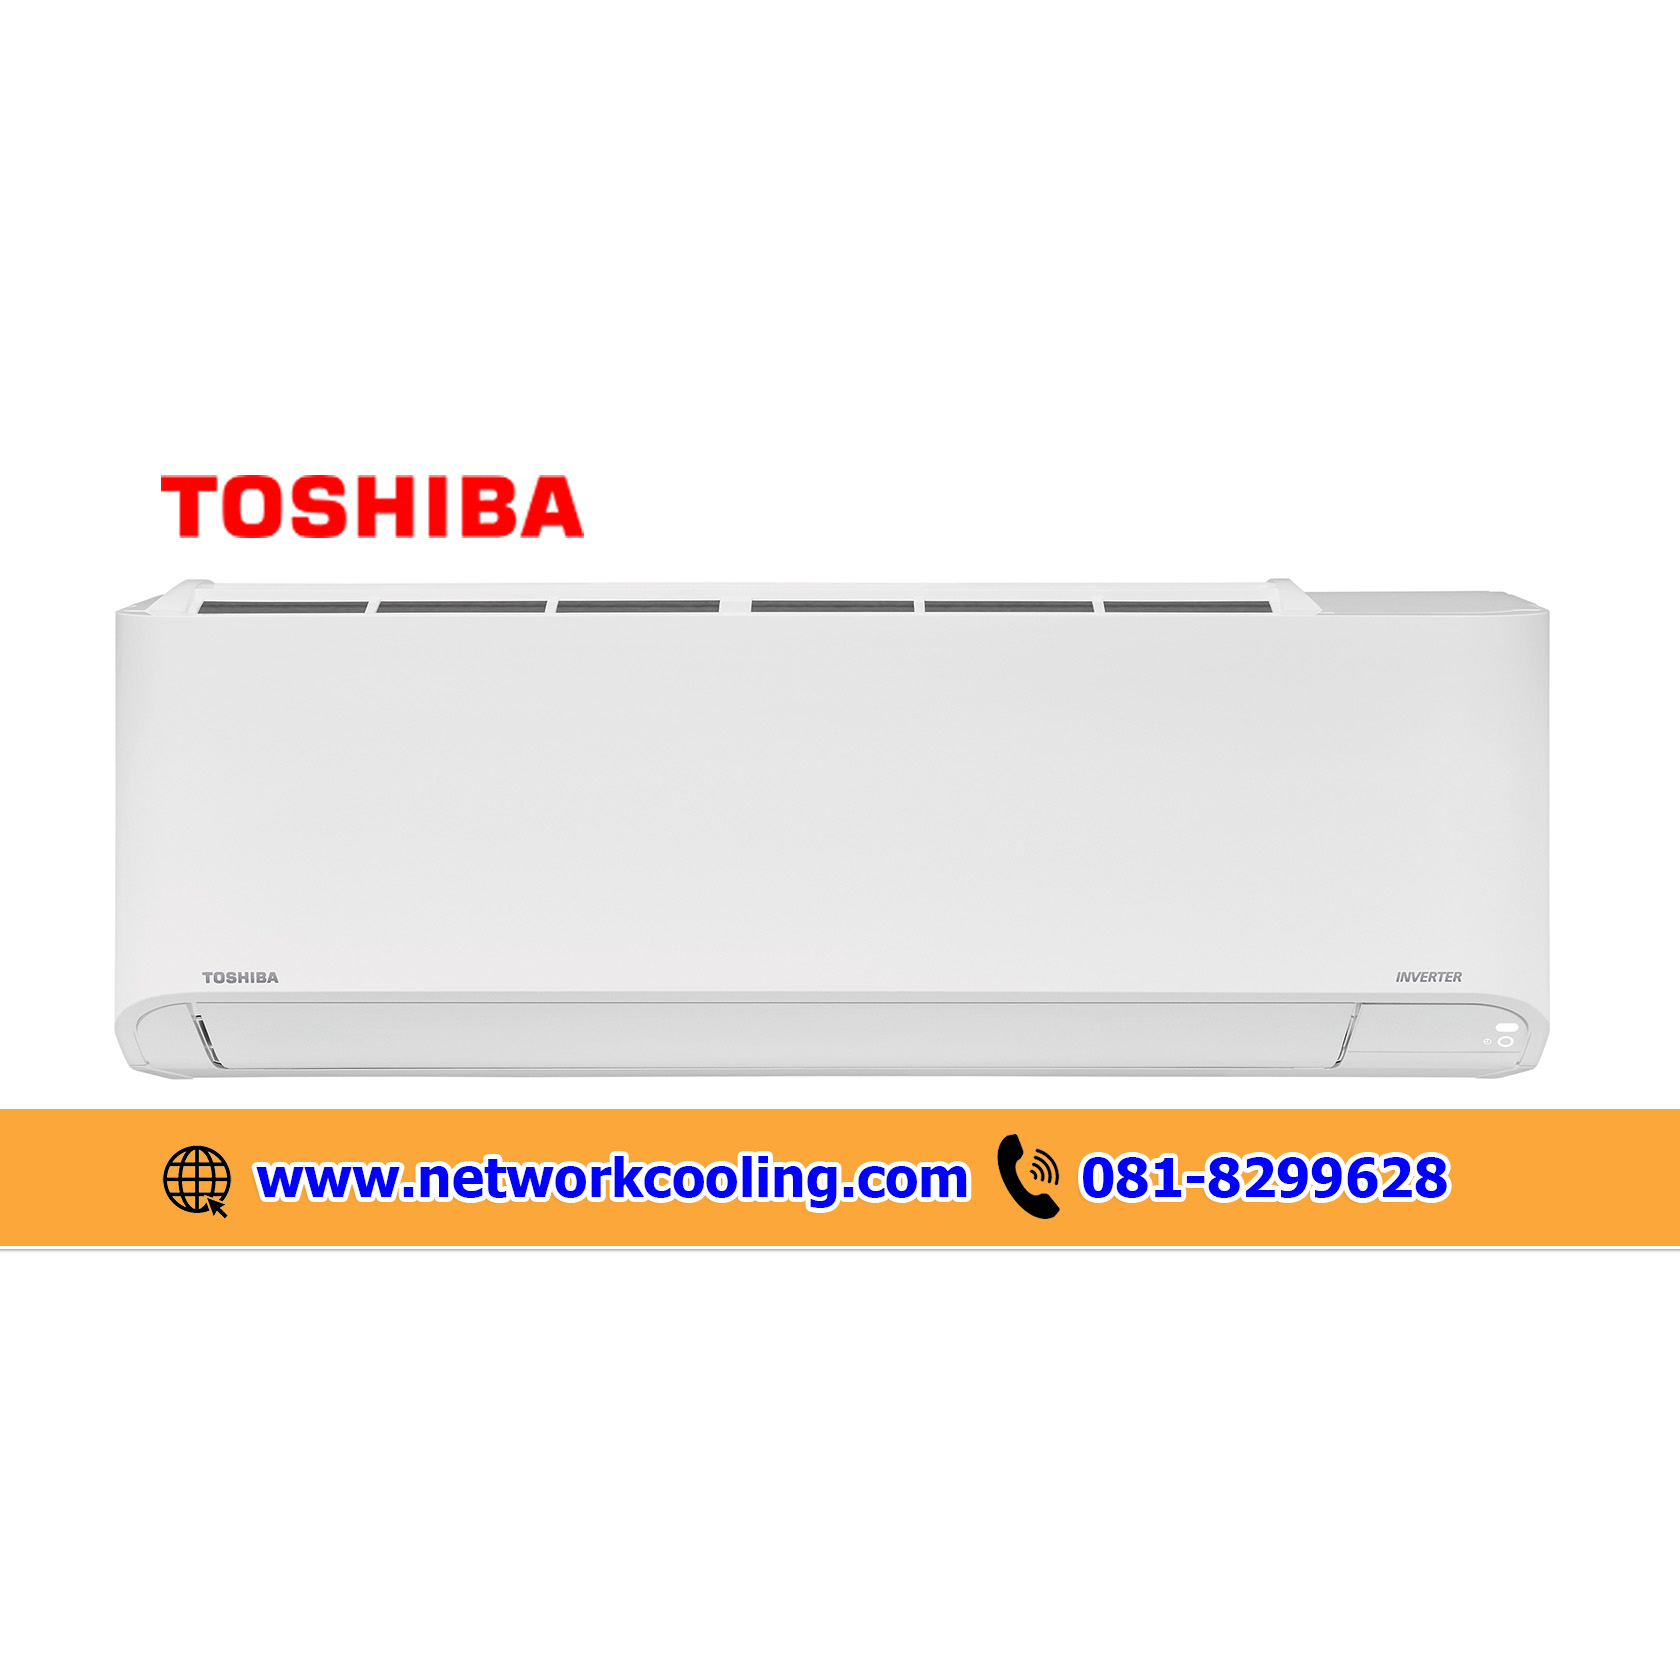 แอร์ผนังโตชิบา Toshiba Hi Wall Inverter เบอร์ 5 R32 Japan Quality